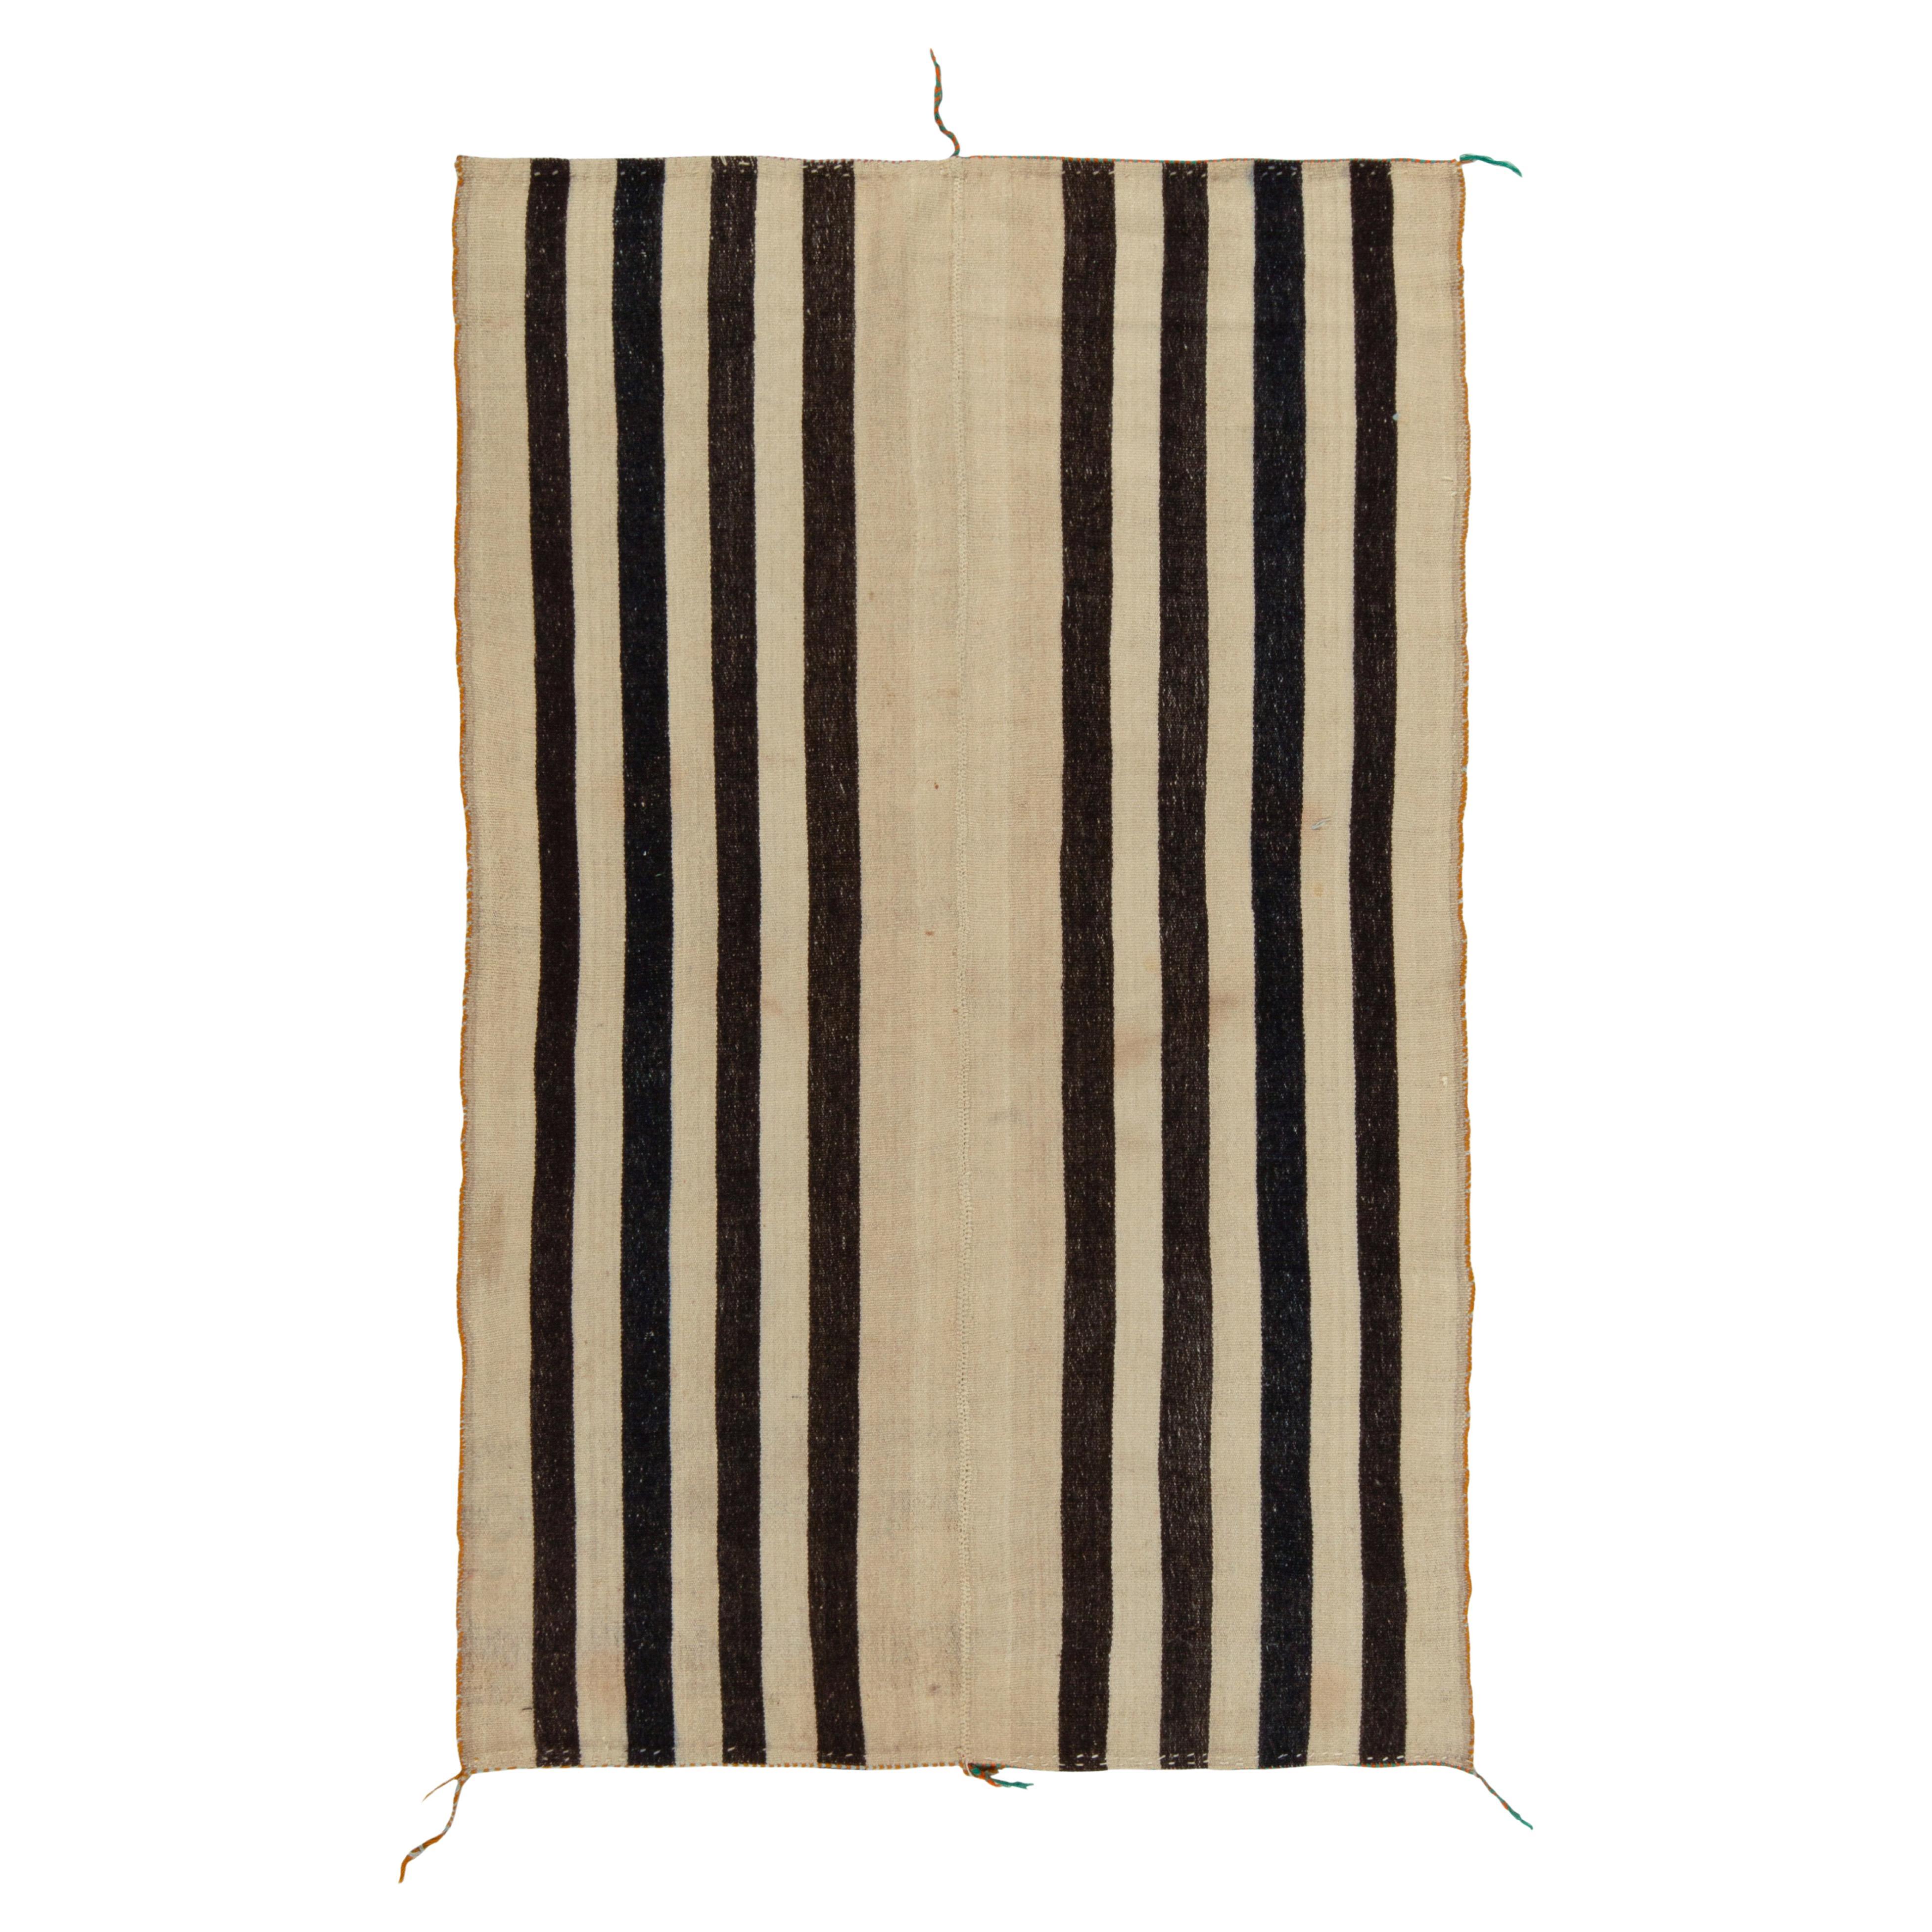 Vintage Turkish Kilim Rug in Beige-Brown & Black Stripe Pattern by Rug & Kilim For Sale